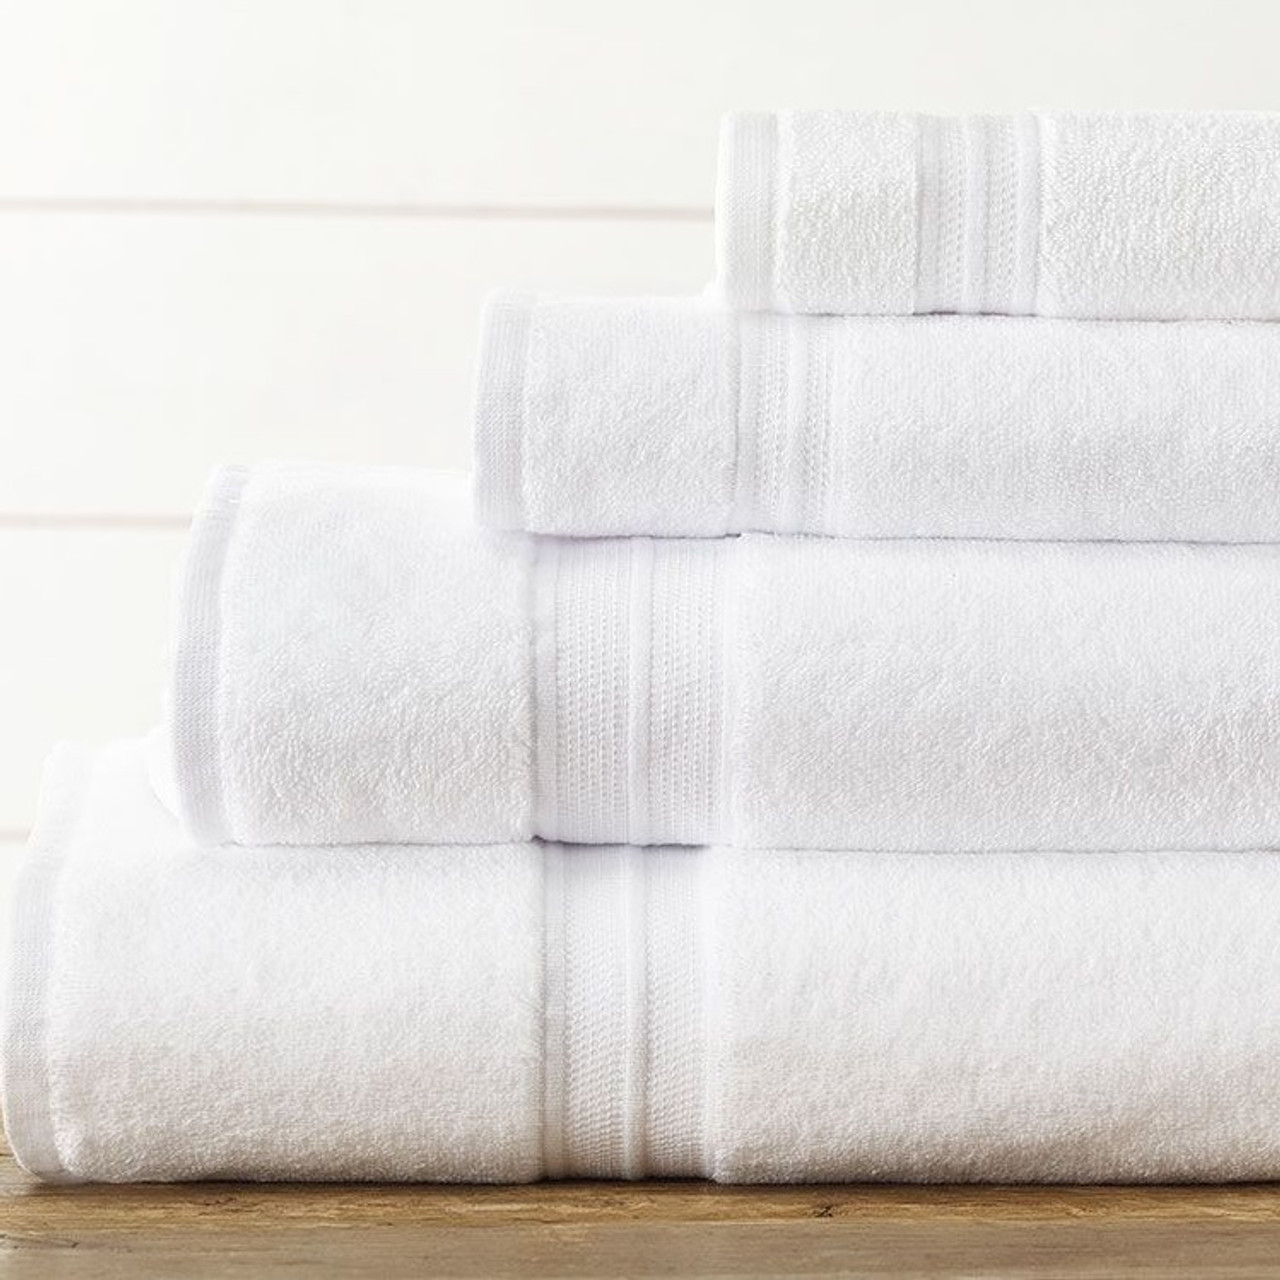 XL Bath Towel, 30x60, 20 lb/dz, White, Rapture, Bath Sheets, Towels, Bed  and Bath Linens, Open Catalog